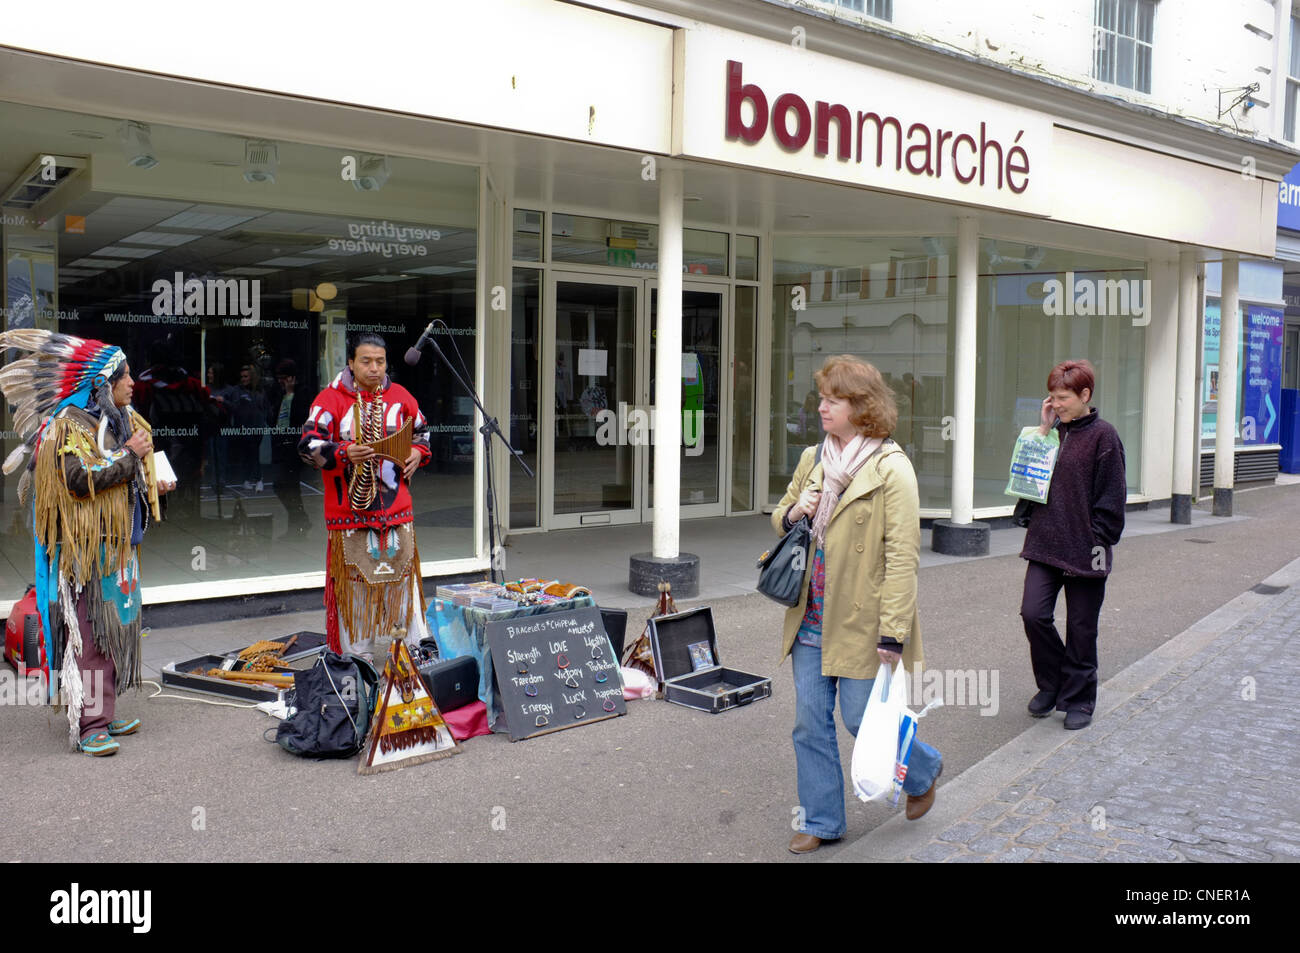 Músicos de América del Sur y vendiendo joyas busking cerradas fuera de una tienda en Falmouth, Cornwall. Foto de stock